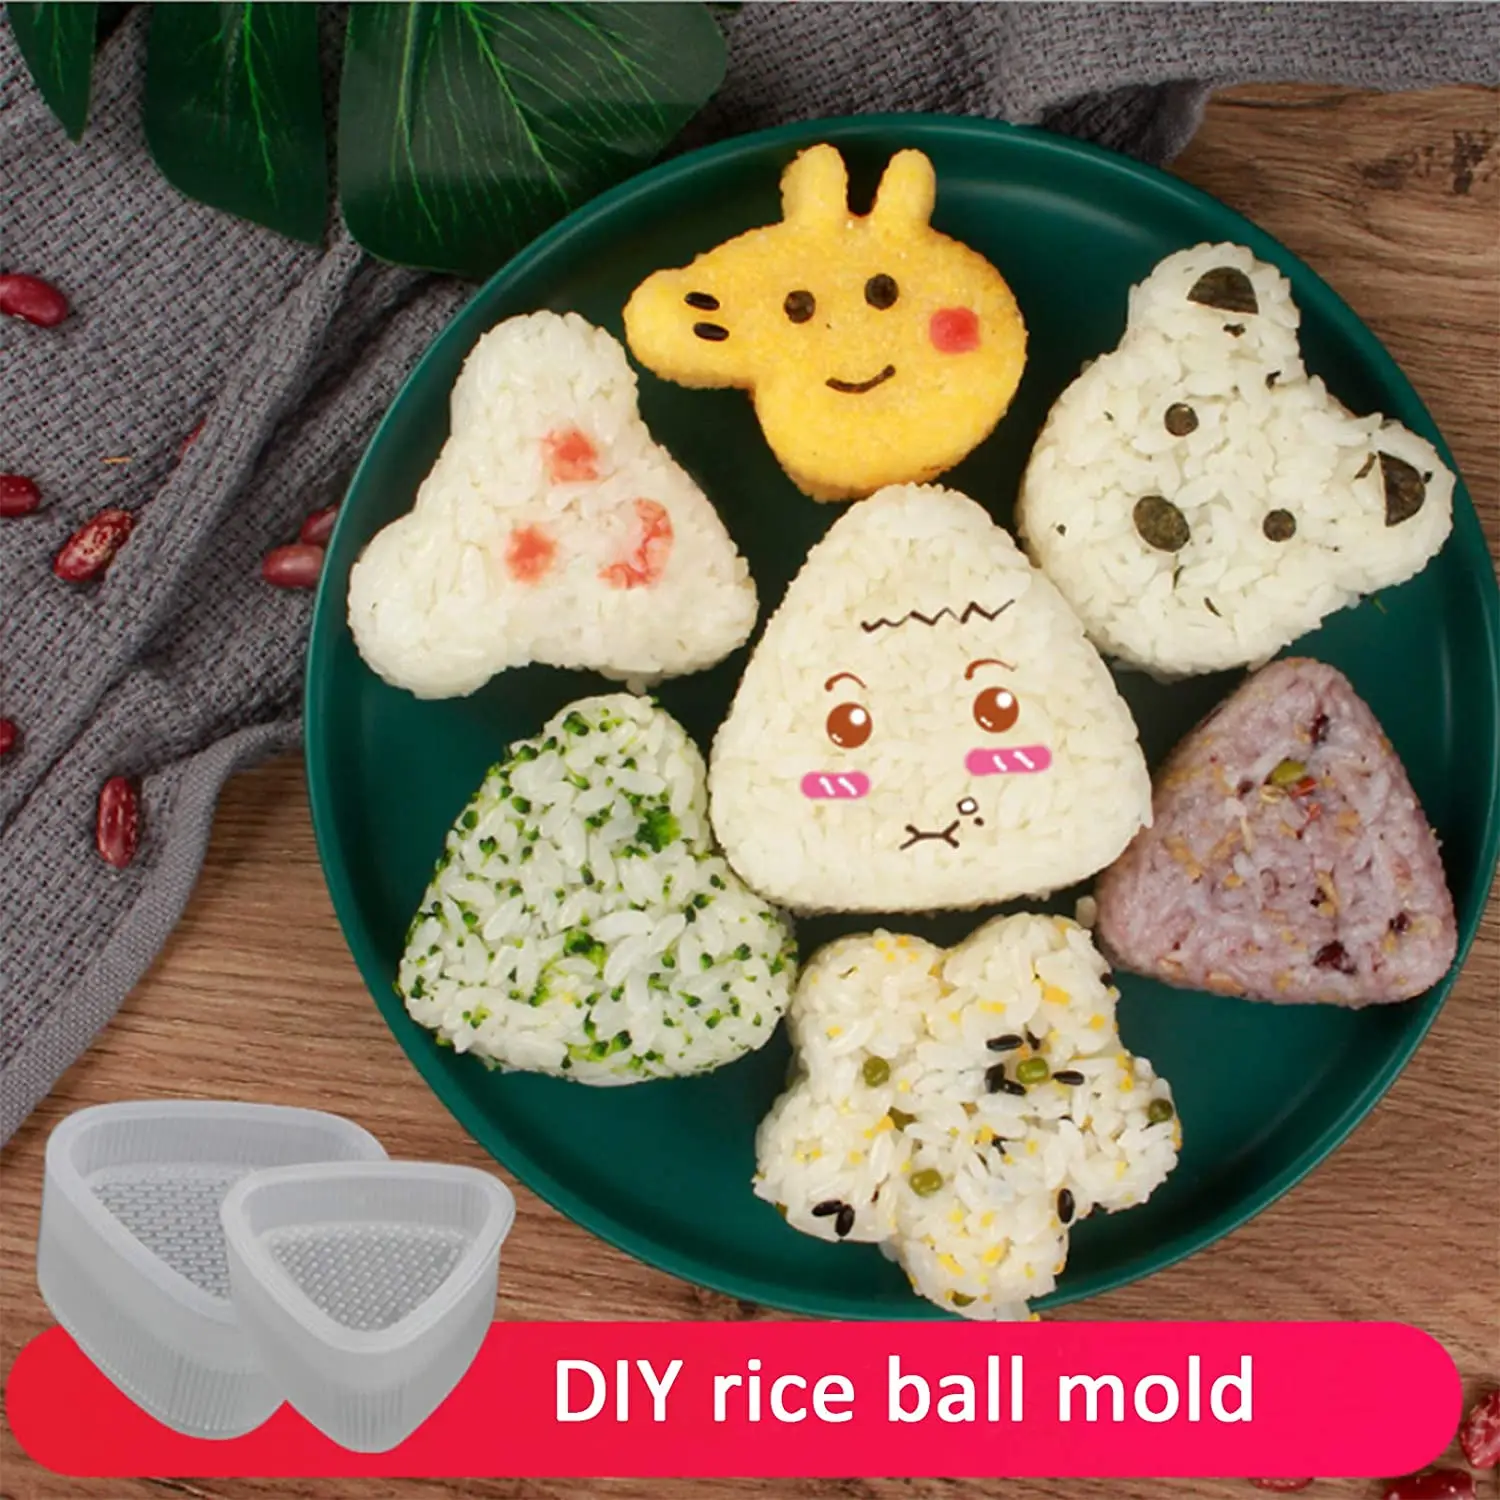 

Суши форма для рисовых шариков Милая в форме животного японская любовь коробка кухня творческие продукты гаджеты Life Fun DIY бэнто пресс Make